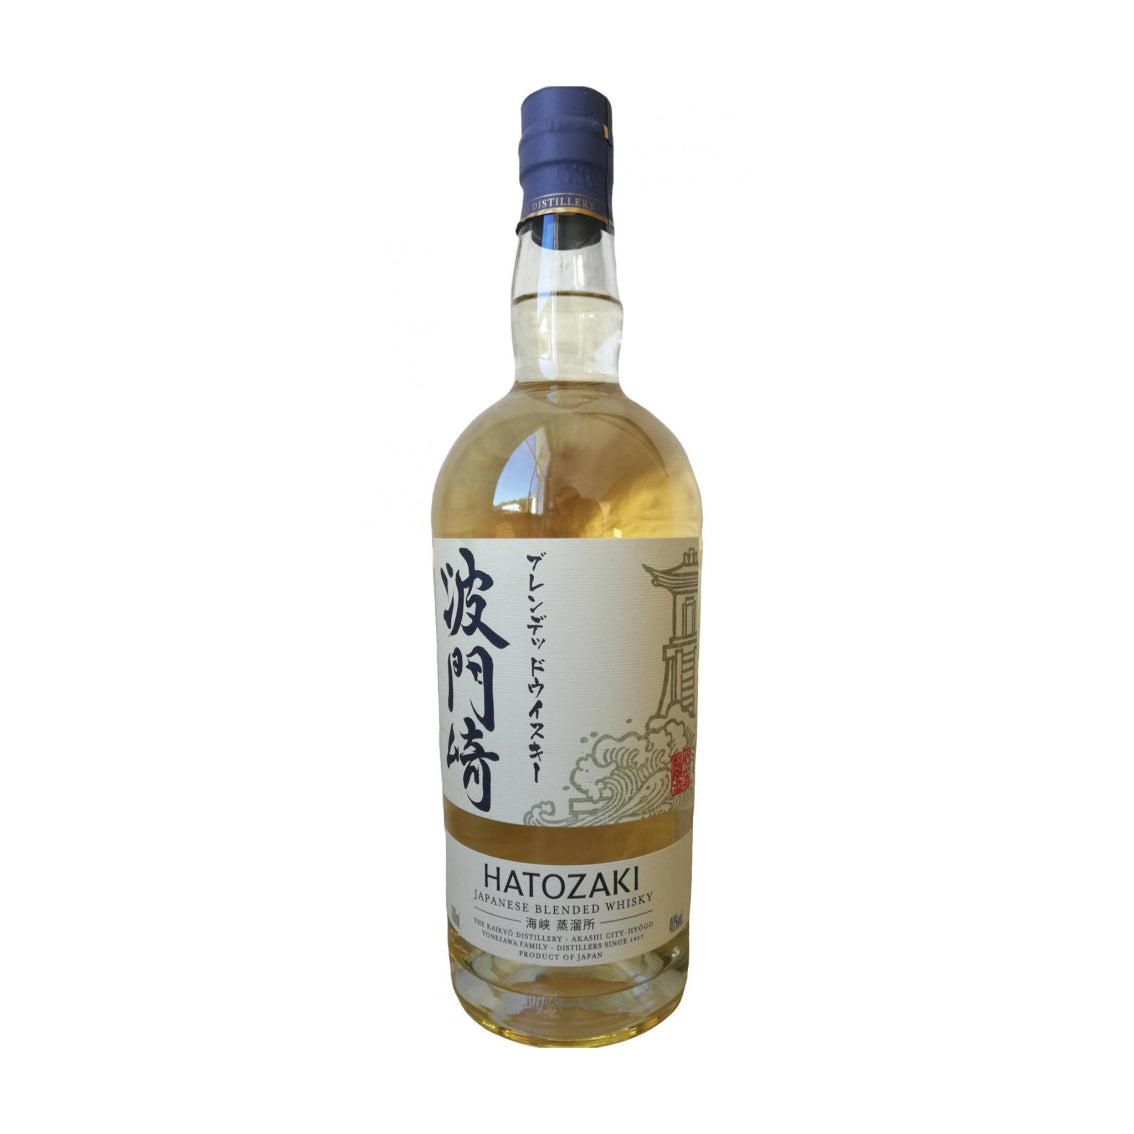 Hatozaki Blended Japanese Whisky